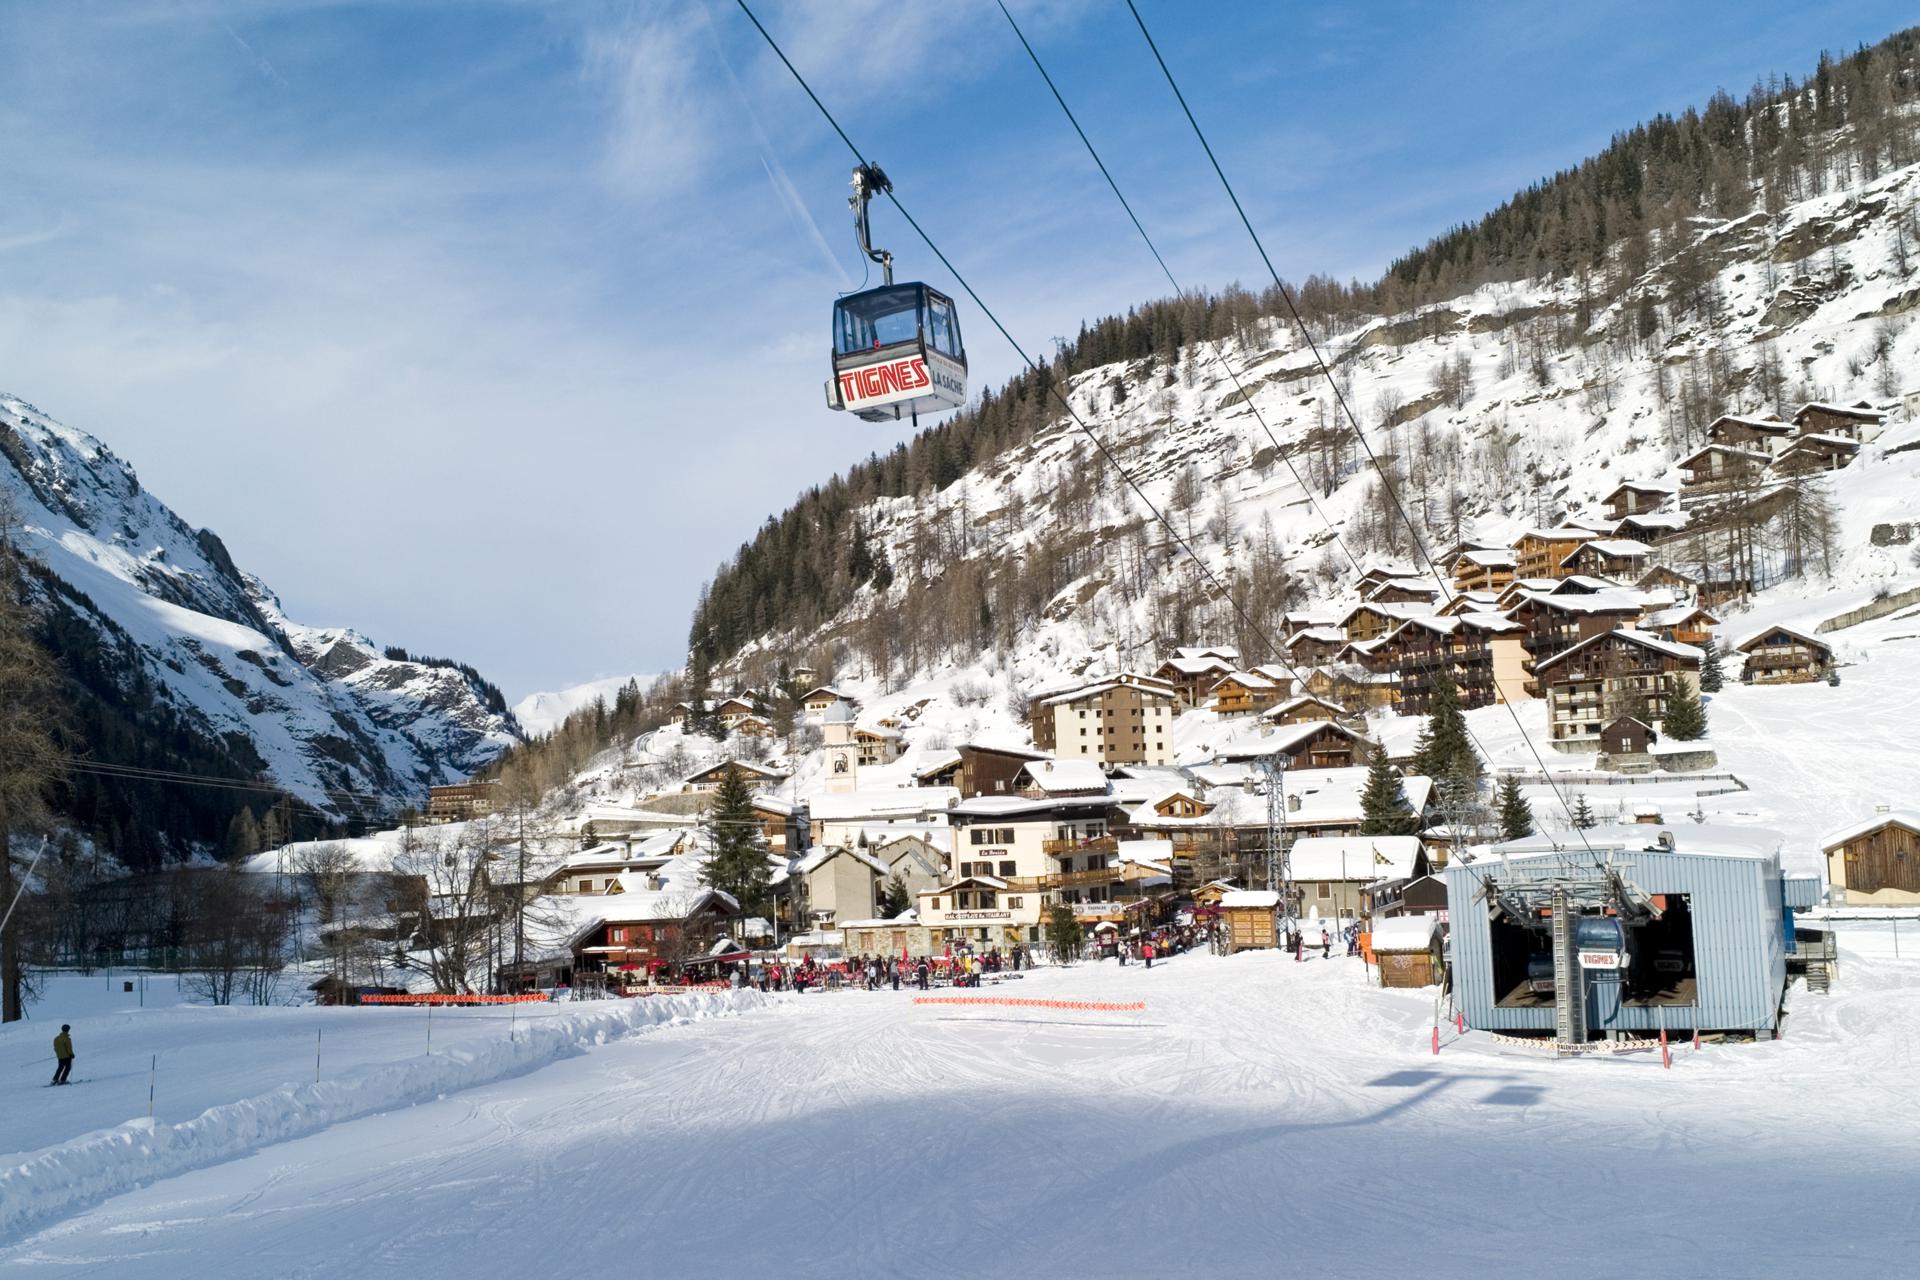 Vacances au Ski en France : jusqu'à - 29% photo 3